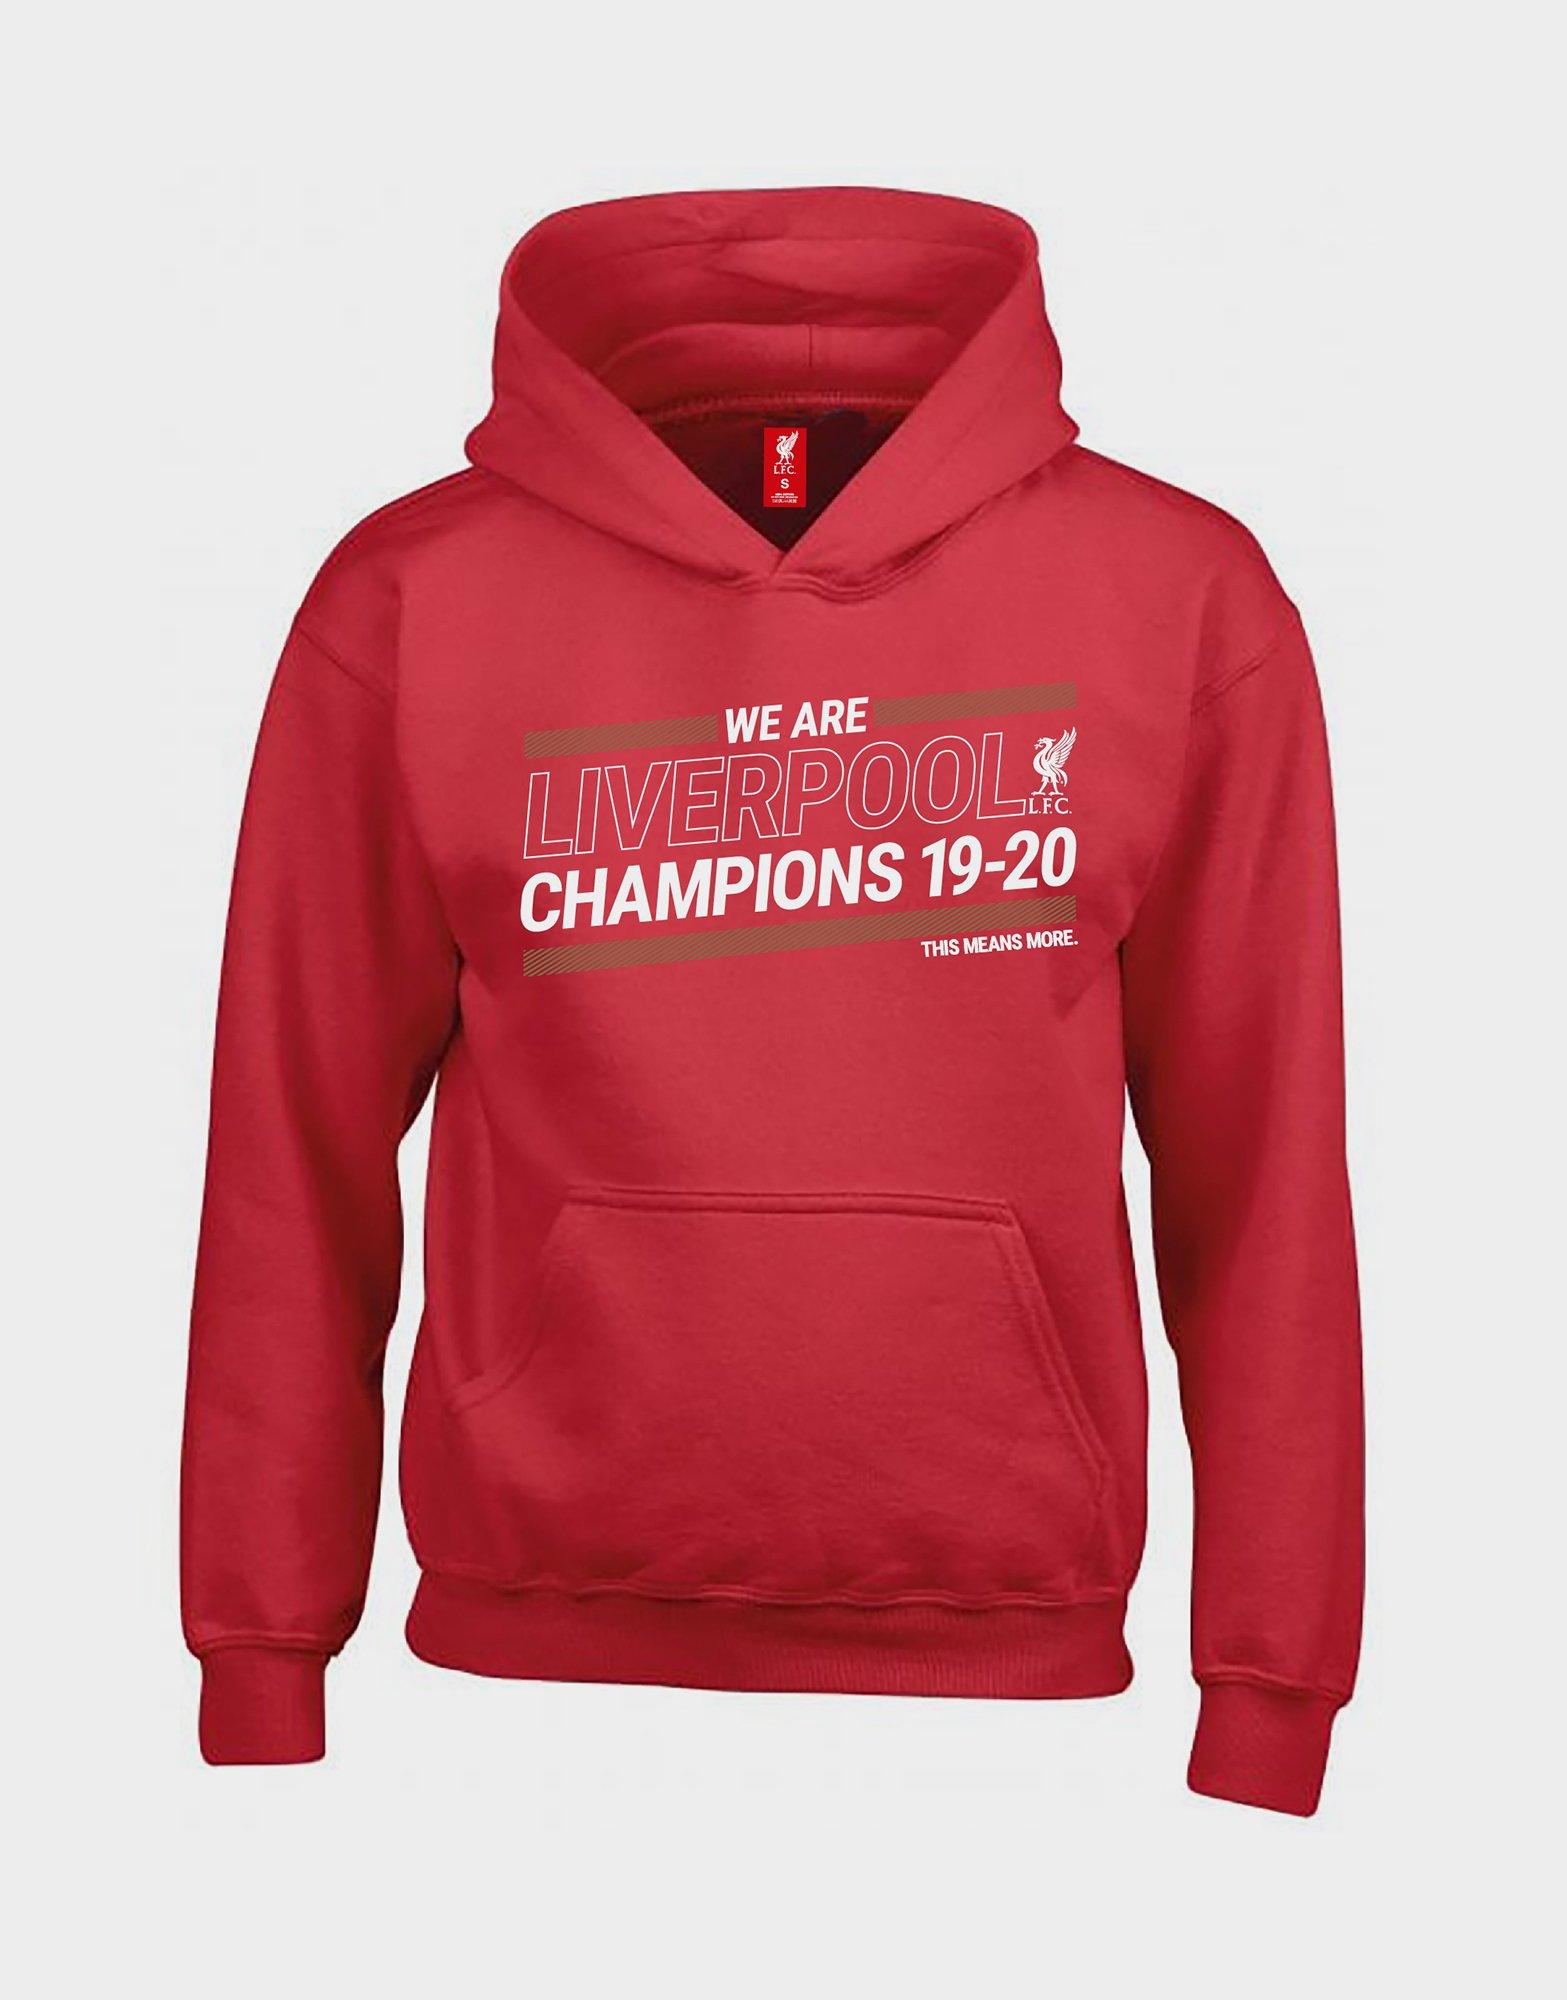 champion hoodie under 20